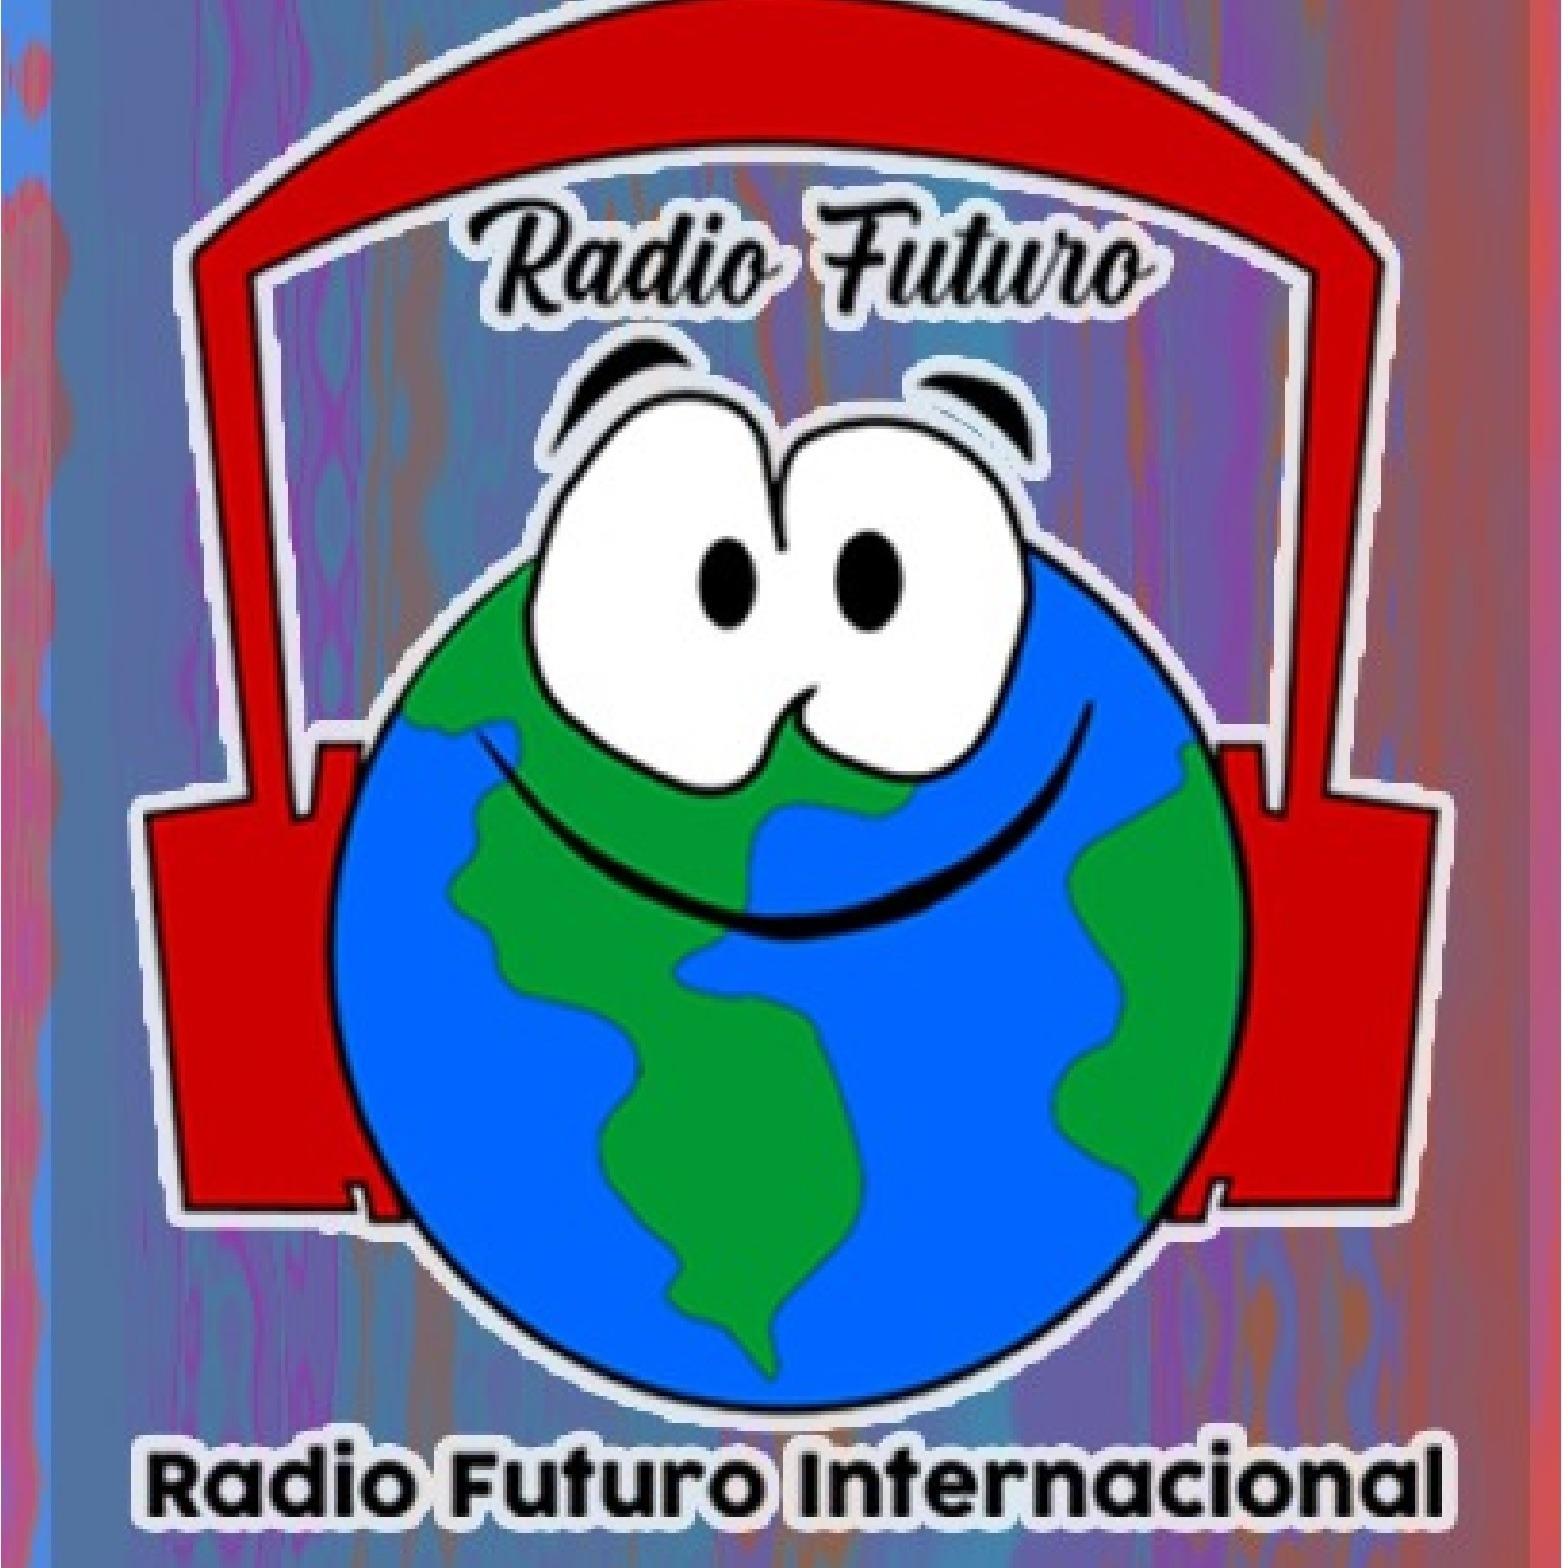 CHACHALAQUEANDO de Radio Futuro Internacional